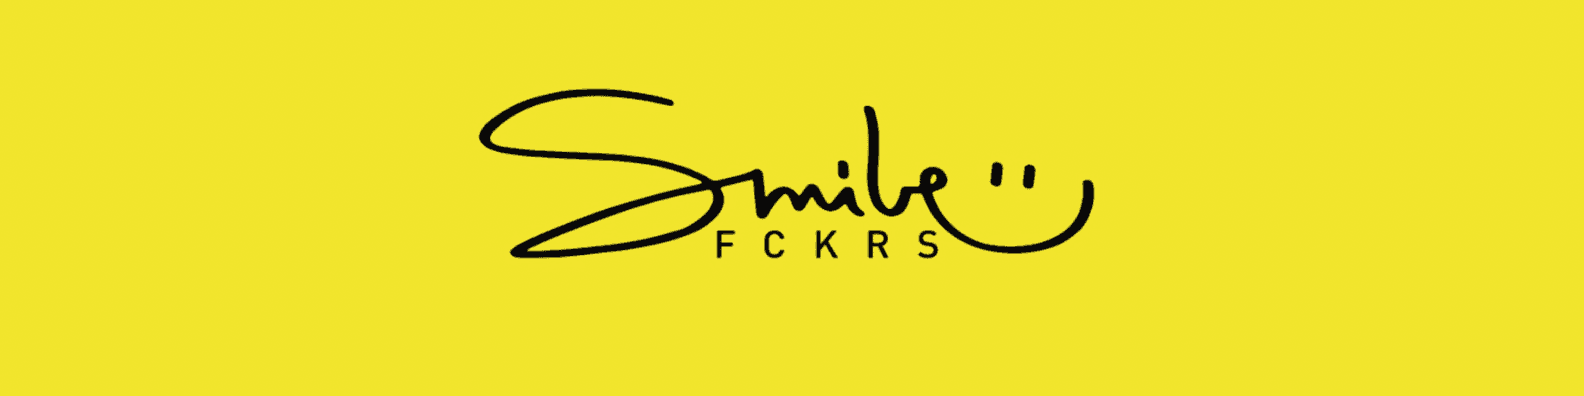 SmileFckrs 横幅